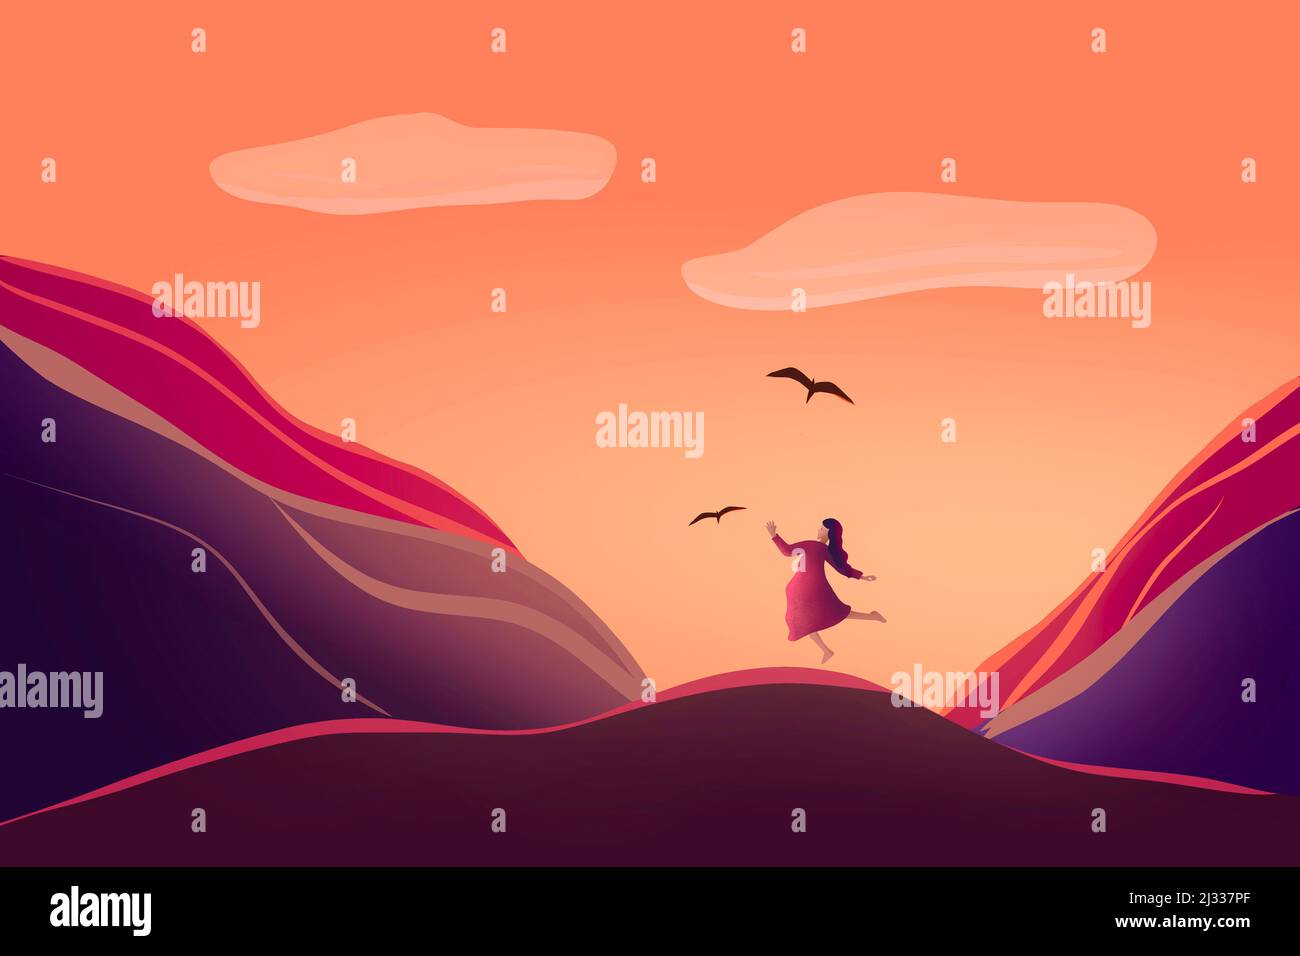 la ilustración de una niña está vagando en la naturaleza. silueta de joven mujer en las montañas contra la puesta de sol. Ilustración de alta calidad Foto de stock